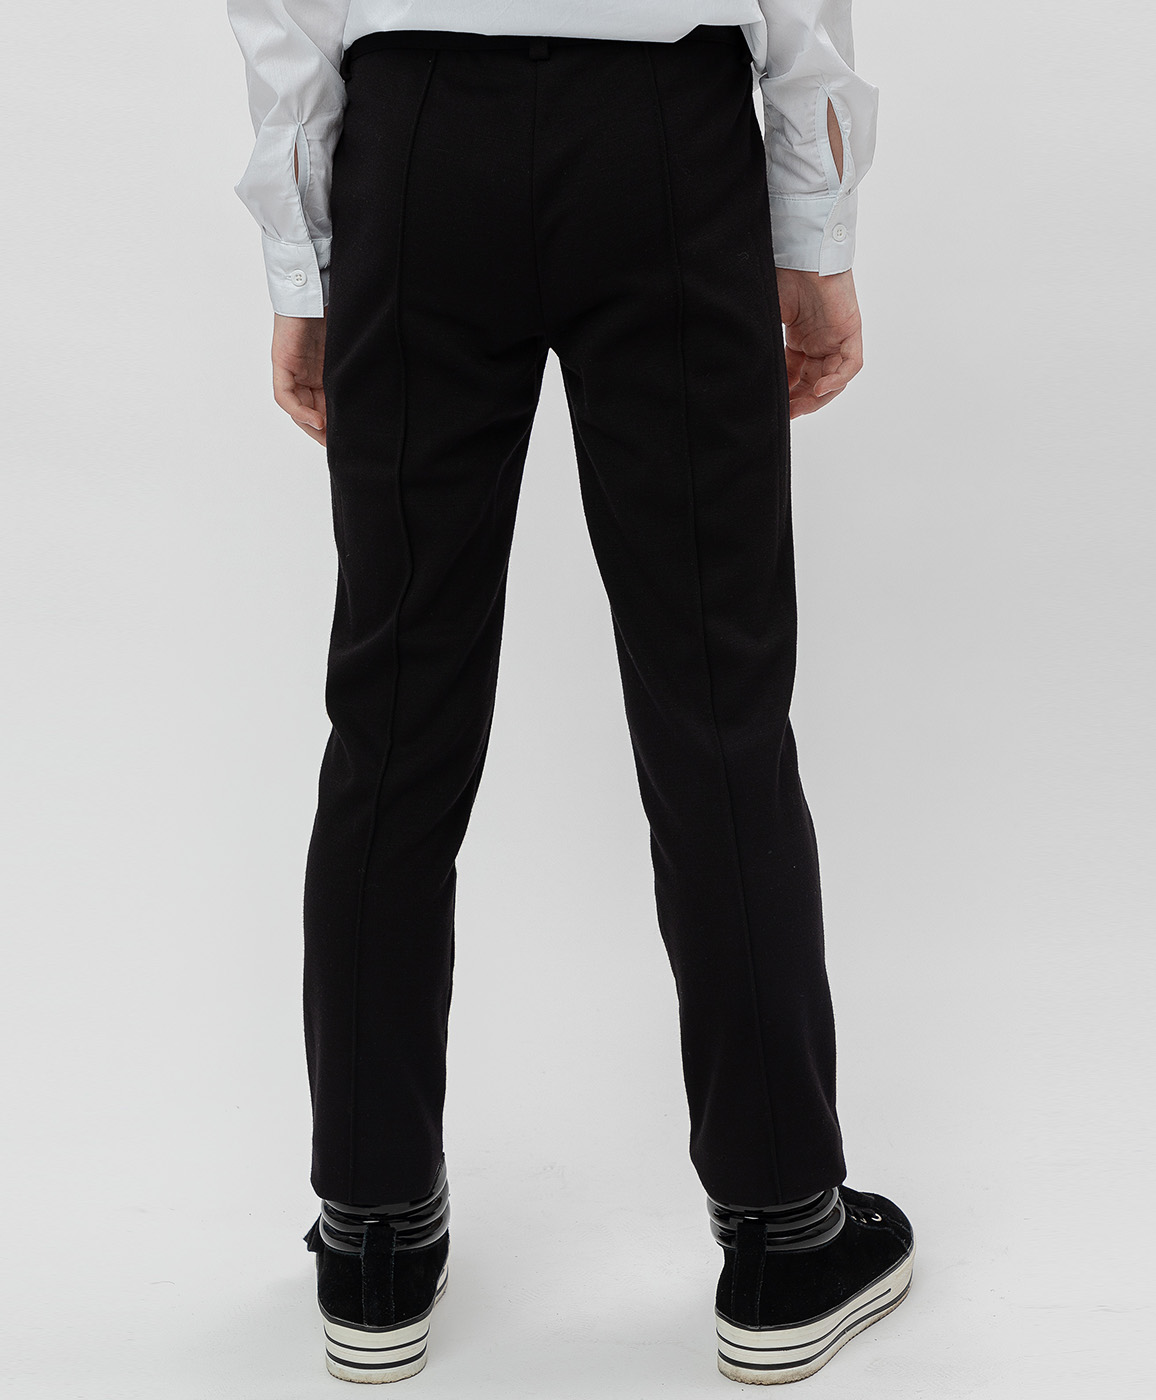 Черные трикотажные брюки Button Blue 220BBGS56020800, размер 134, цвет черный regular fit / прямые - фото 4